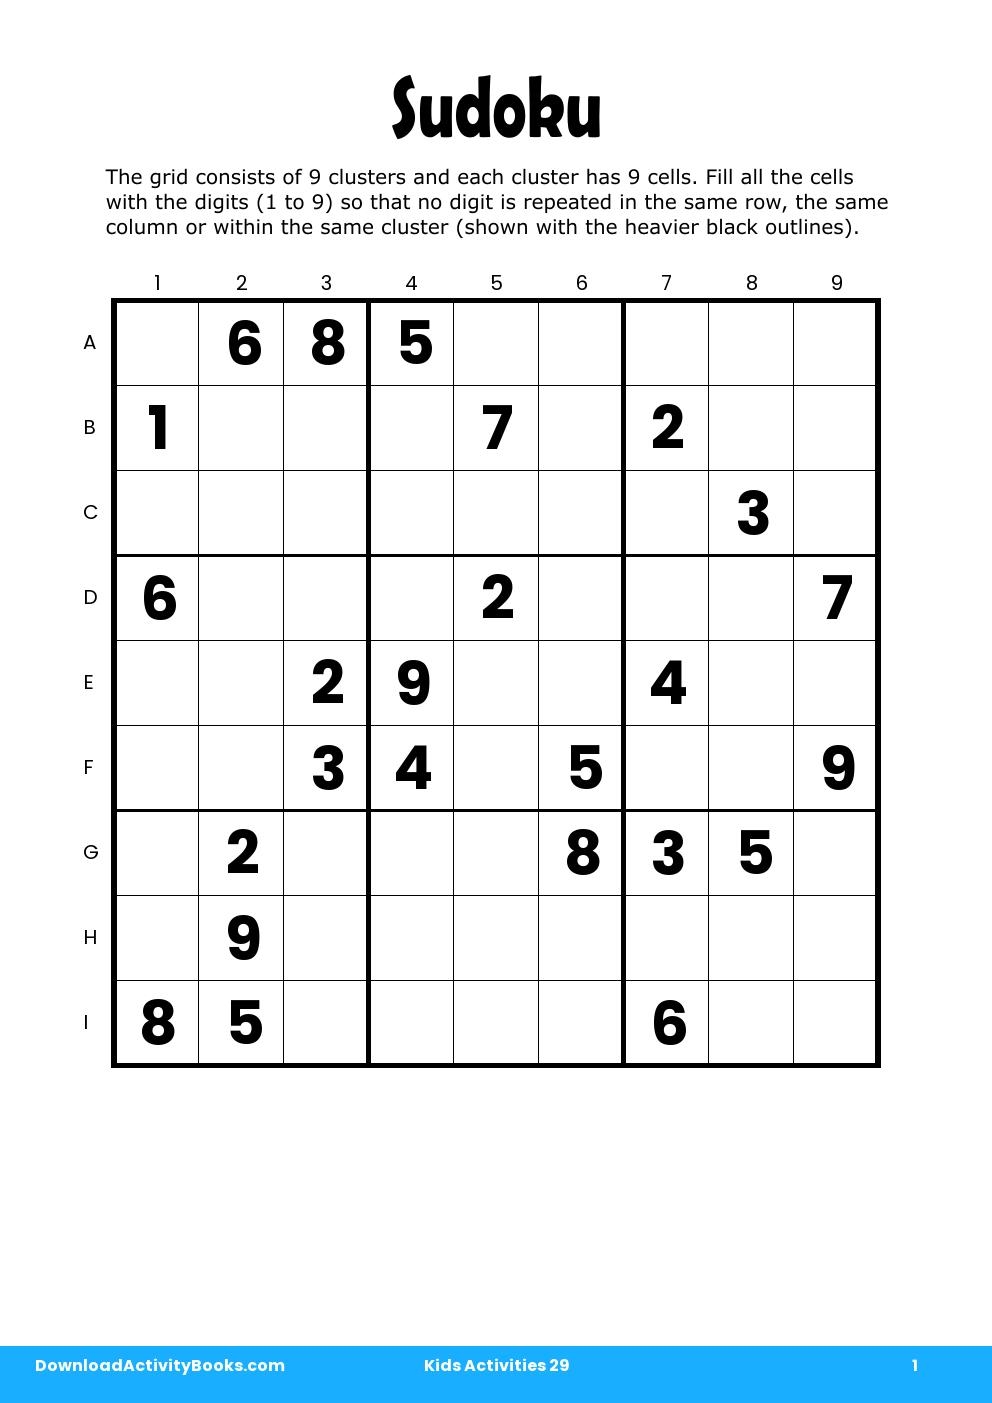 Sudoku in Kids Activities 29